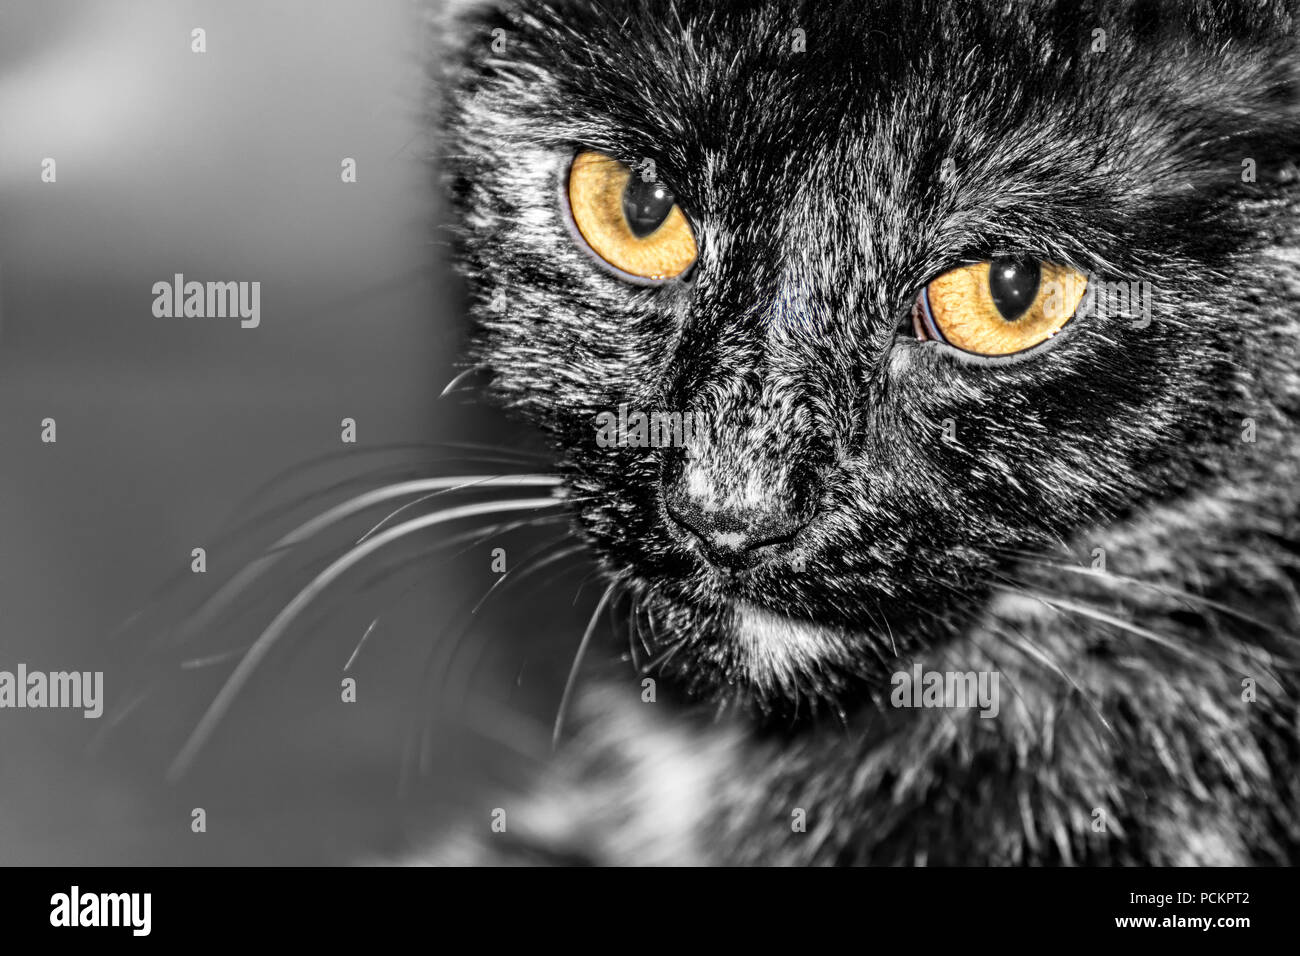 Close-up d'un chat domestique. Felis silvestris catus. Portrait de l'animal noir-blanc. Détail mélancolique, triste yeux ambre, moustaches. Banque D'Images